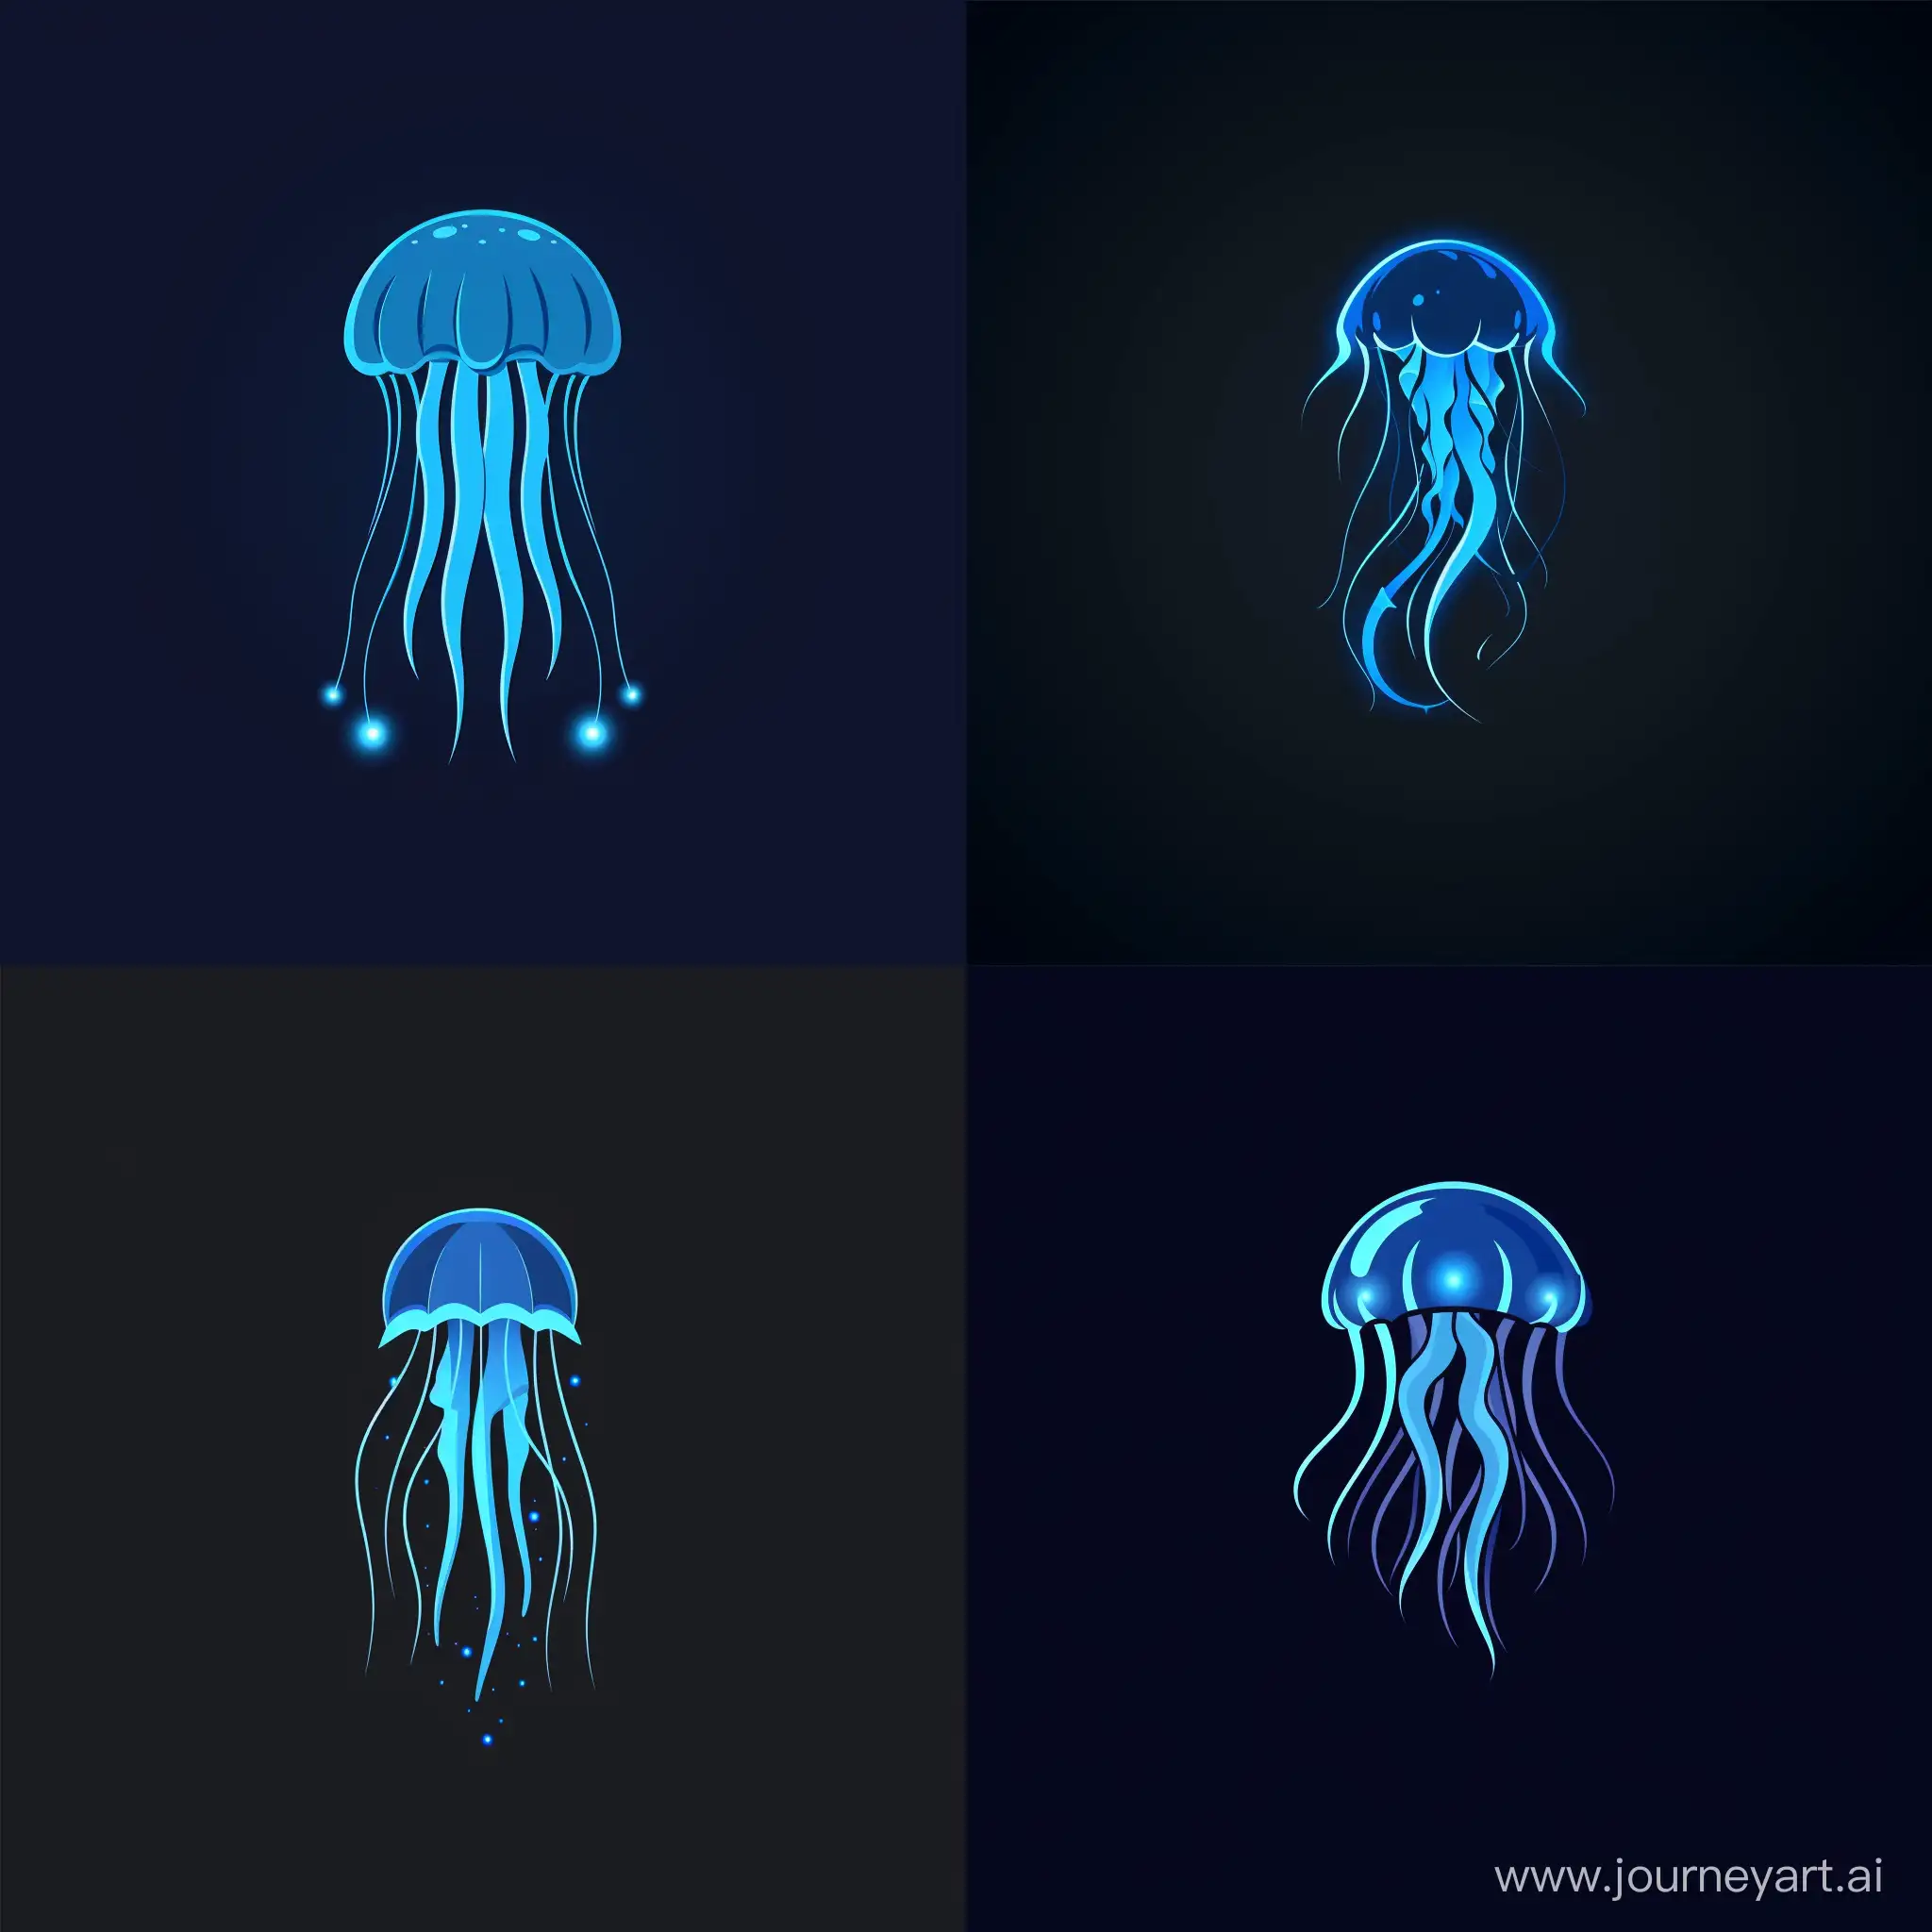 Создай минималистичный логотип , в центре которого будет изображена голубая медуза с голубой подсветкой